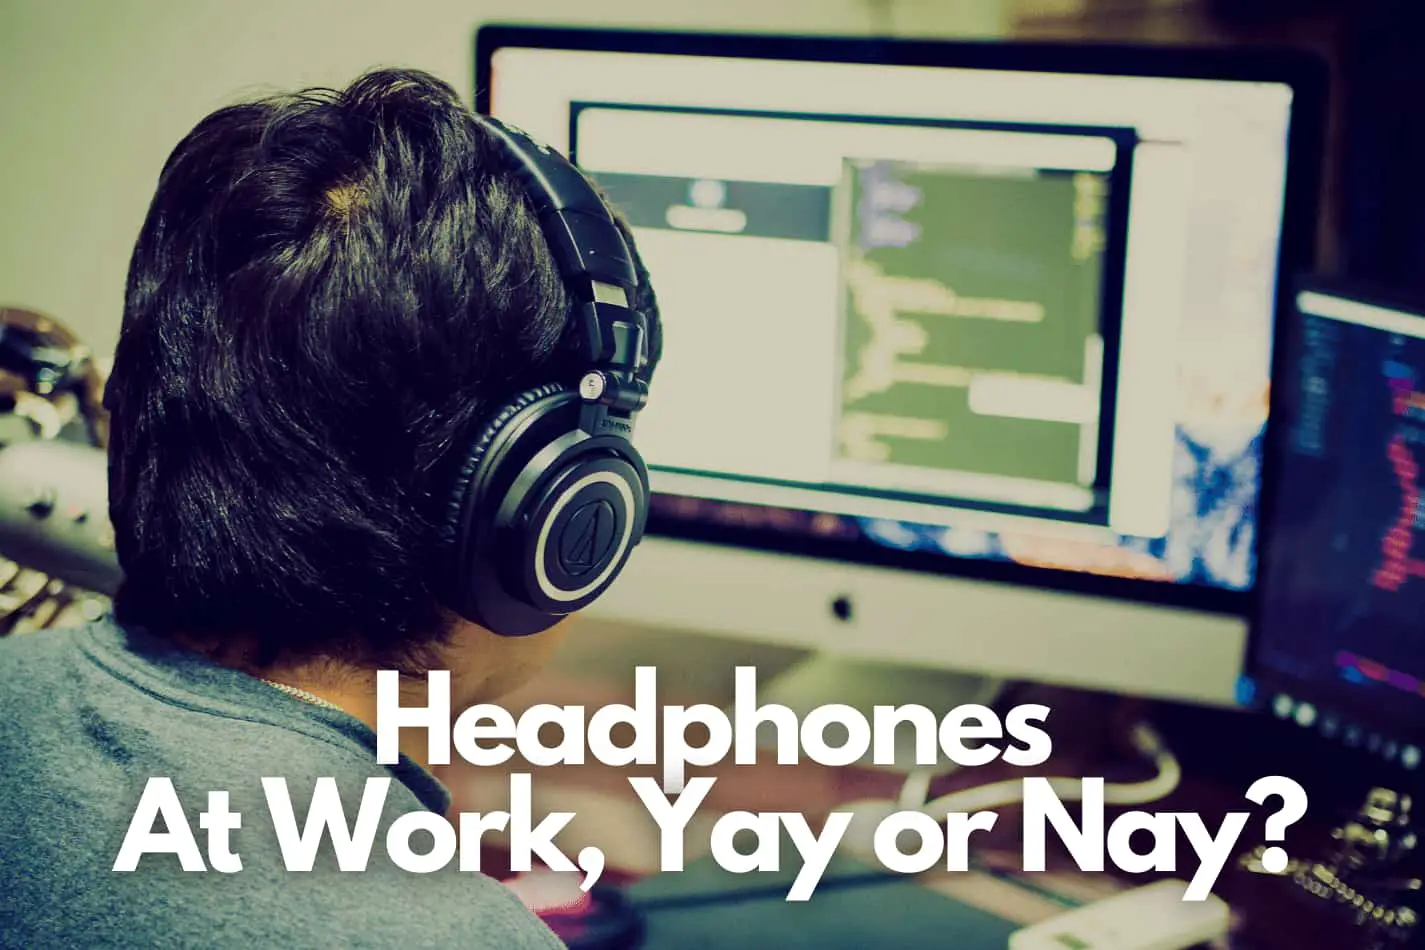 Man wearing headphones while working at a mac desktop